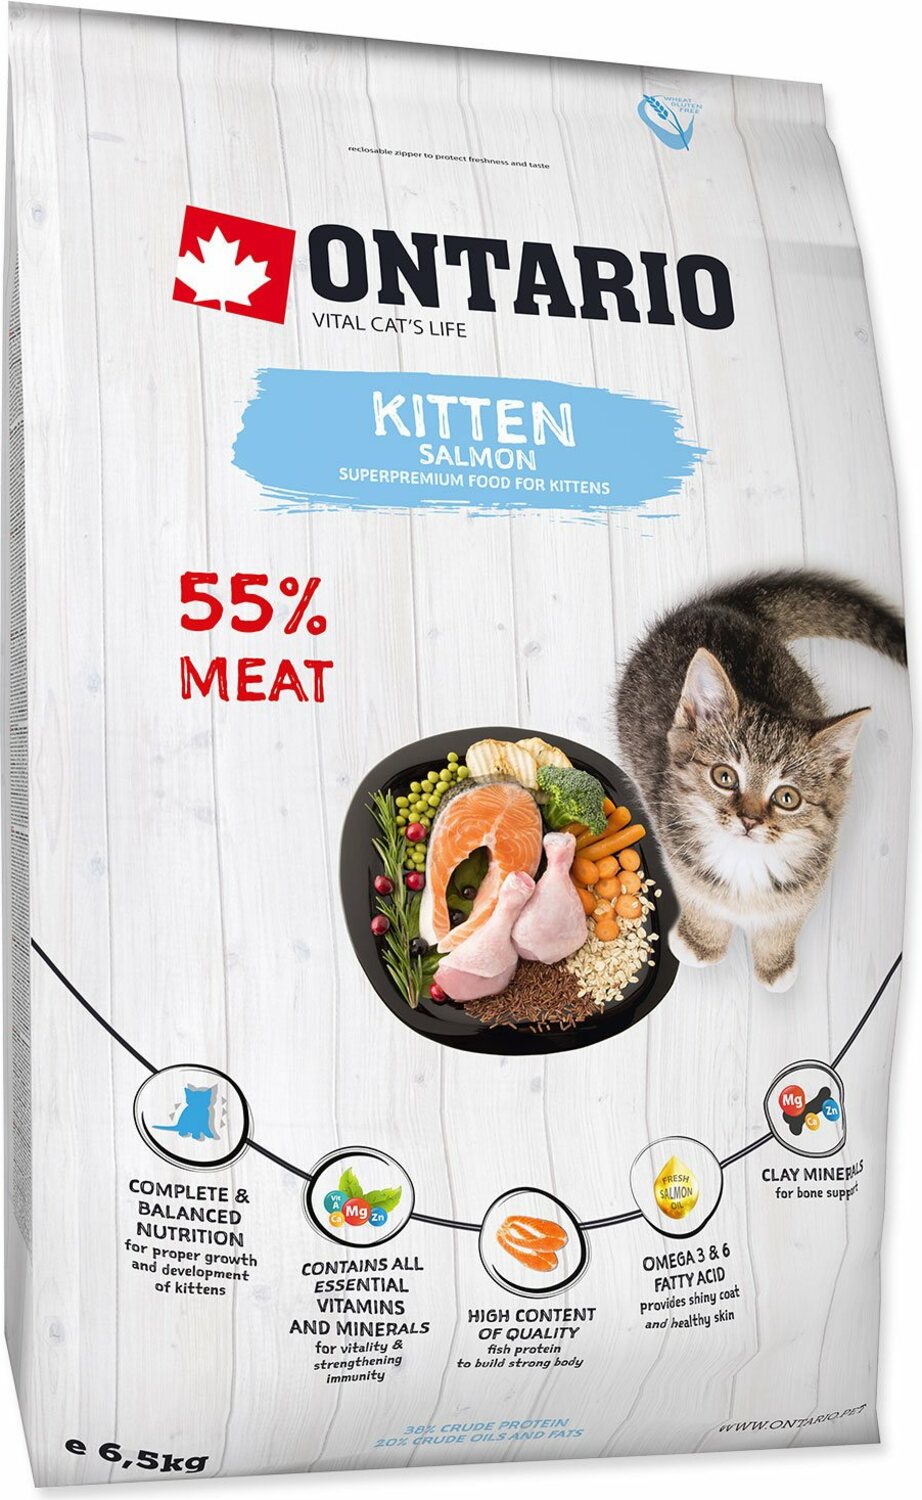 Krmivo Ontario Kitten Salmon 6,5kg